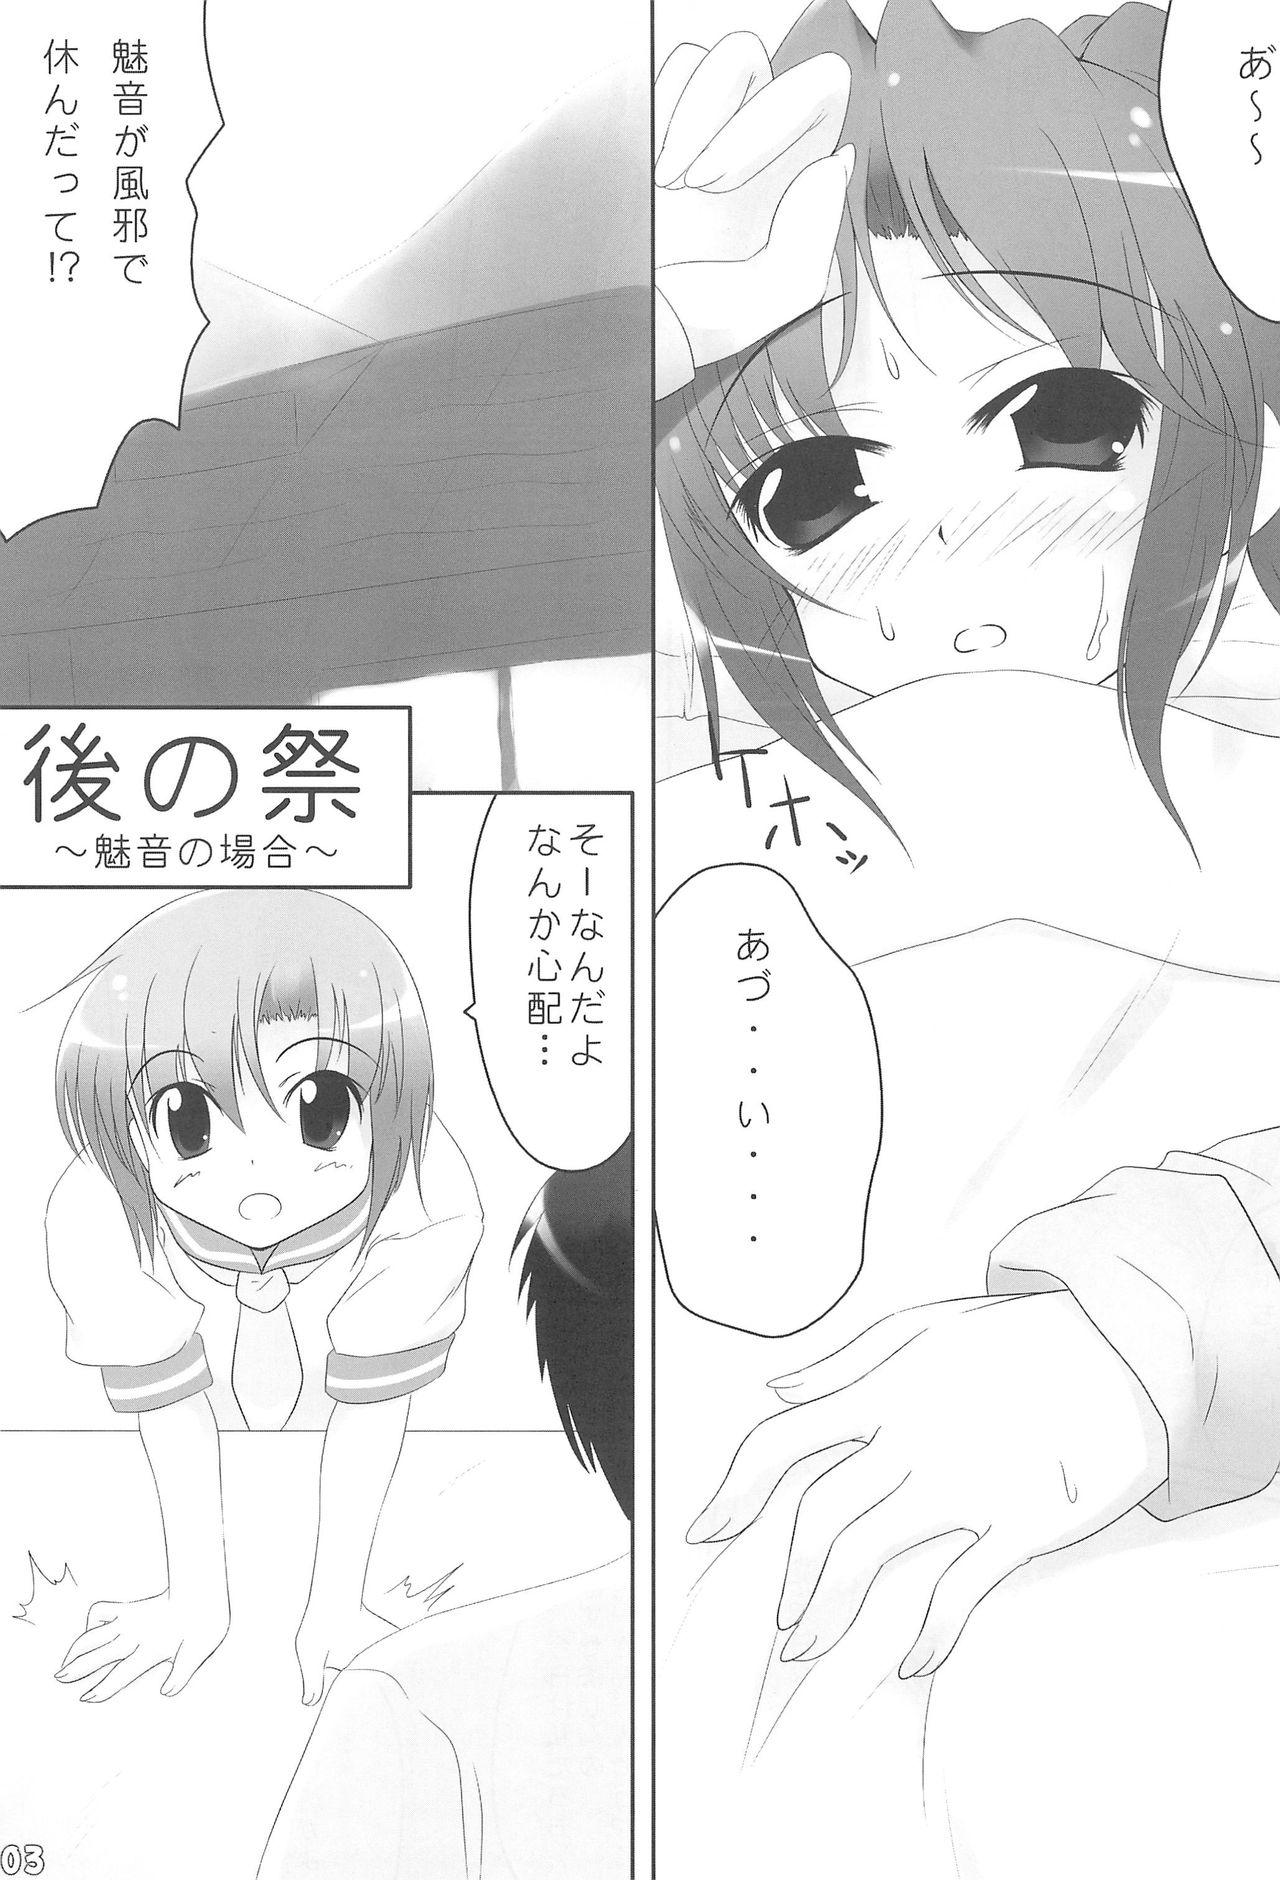 Perfect Ass Ato no Matsuri - Higurashi no naku koro ni Letsdoeit - Page 3